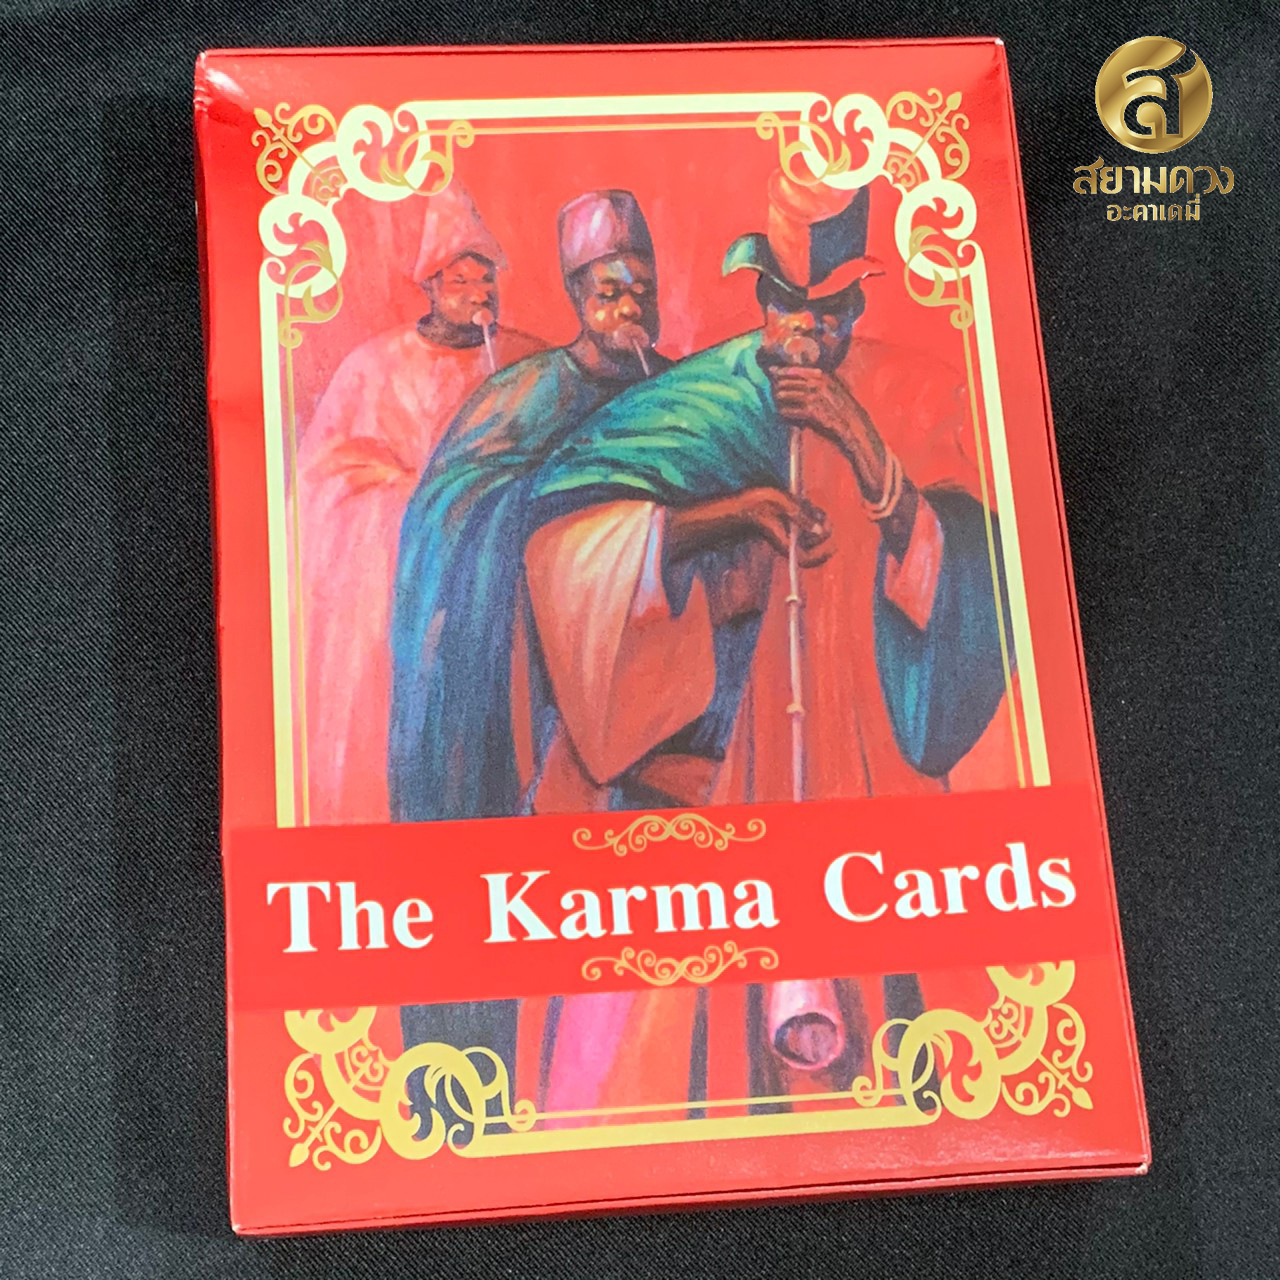 ไพ่พยากรณ์กรรม The Karma Cards โดย อาจารย์สุกิจ ภักดีดินแดน ไพ่ 32 ใบ พร้อมหนังสือคู่มือ